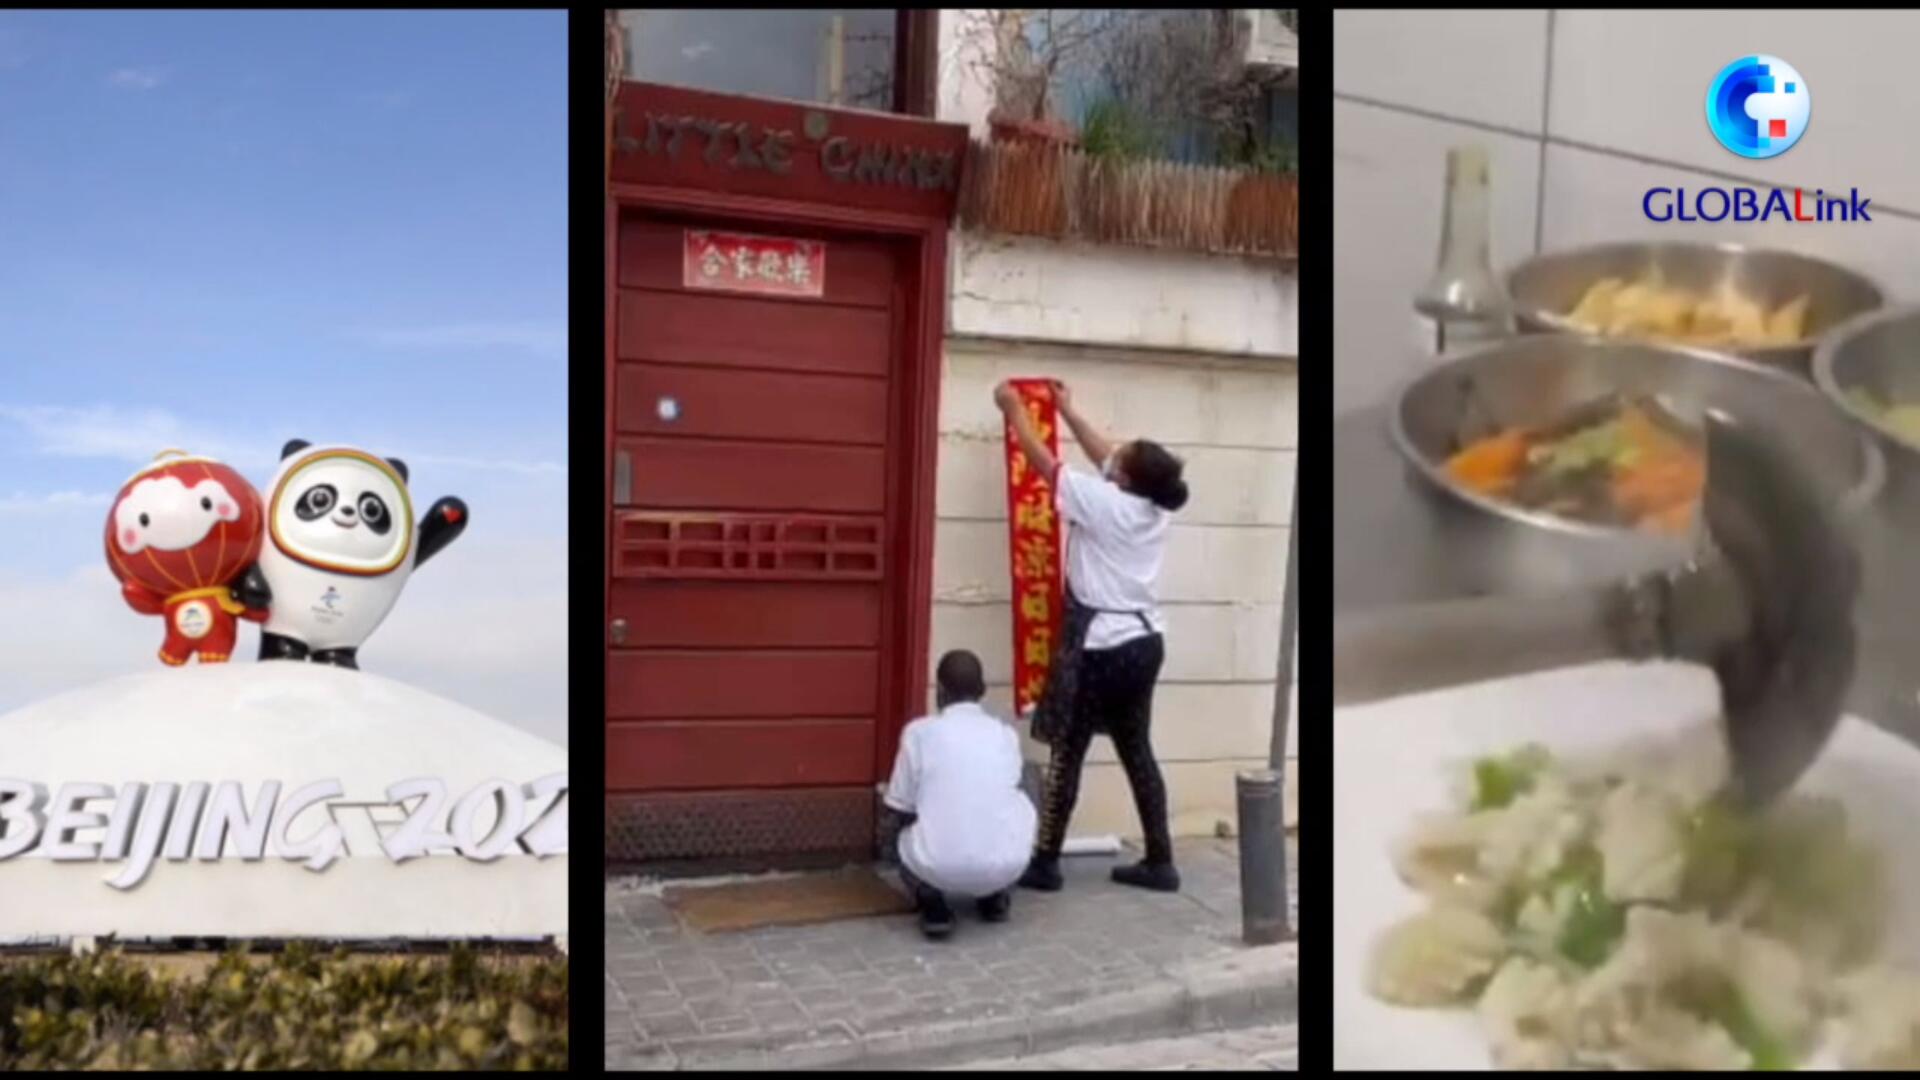 فيديو: مع أطباق صينية لذيذة ورياضات ثلجية ممتعة... لبنانيون يستمتعون بأجواء السنة الصينية الجديدة